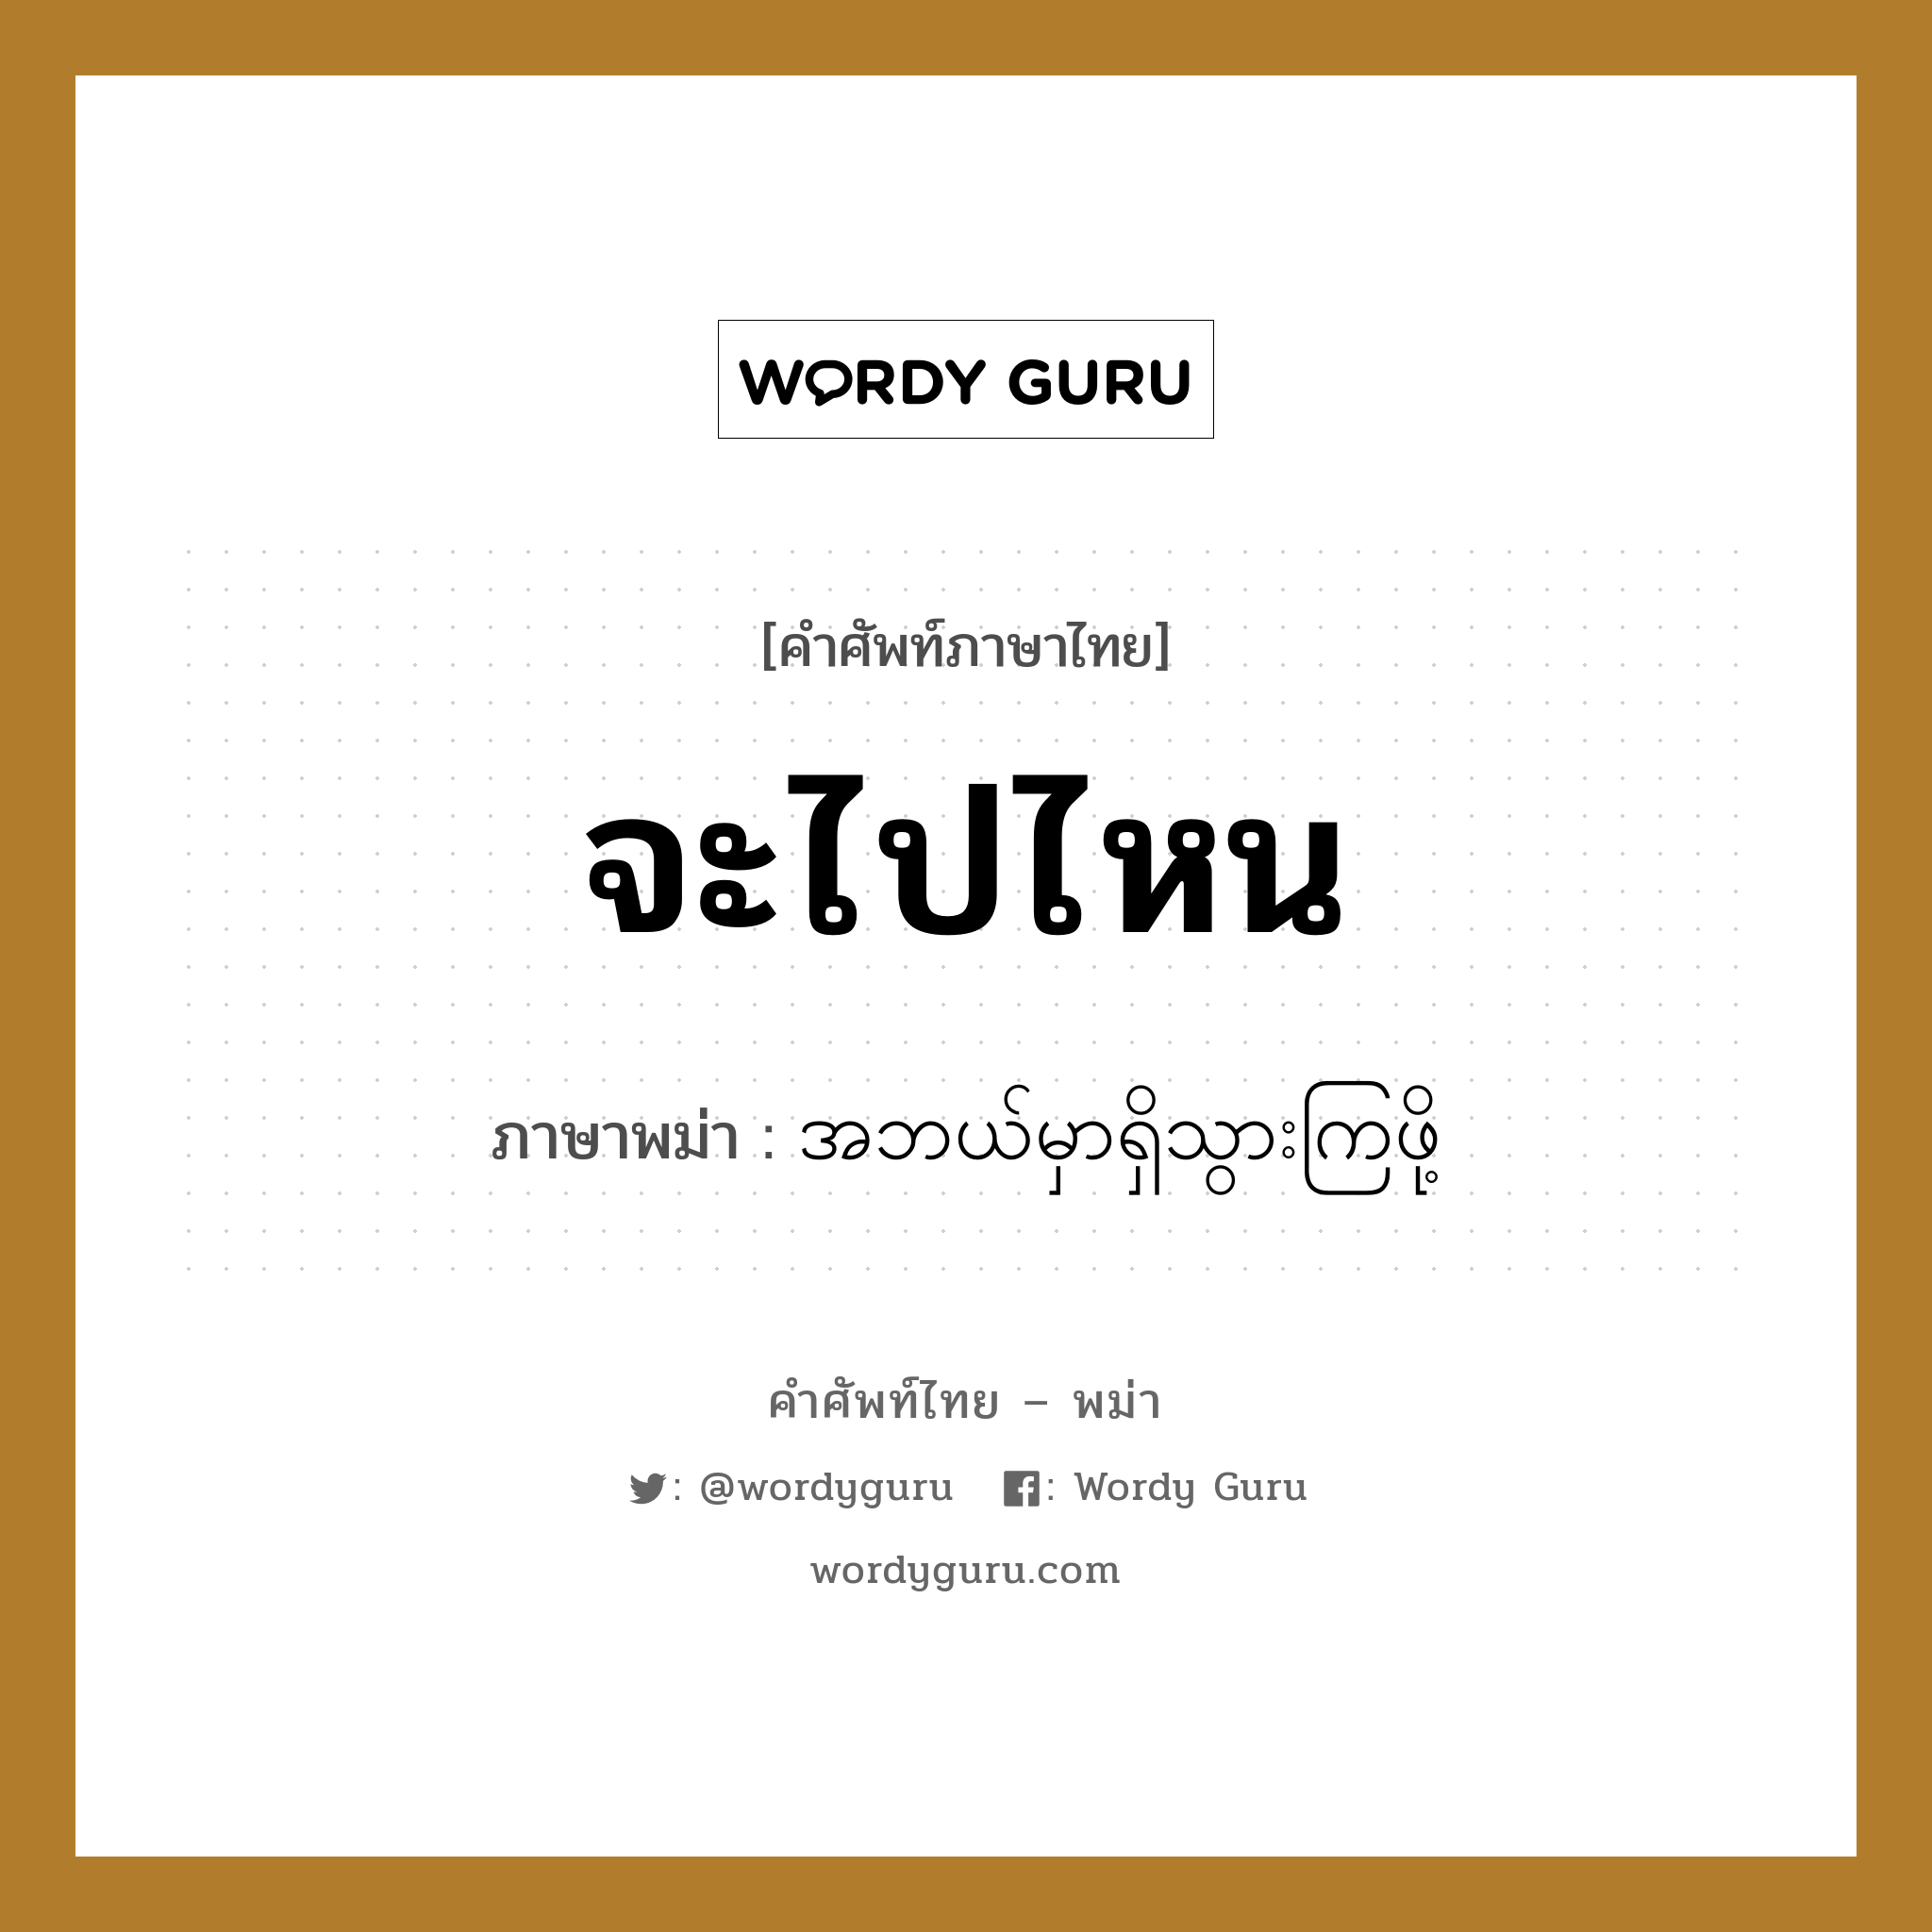 จะไปไหน ภาษาพม่าคืออะไร, คำศัพท์ภาษาไทย - พม่า จะไปไหน ภาษาพม่า အဘယ်မှာရှိသွားကြဖို့ หมวด บทสนทนา หมวด บทสนทนา